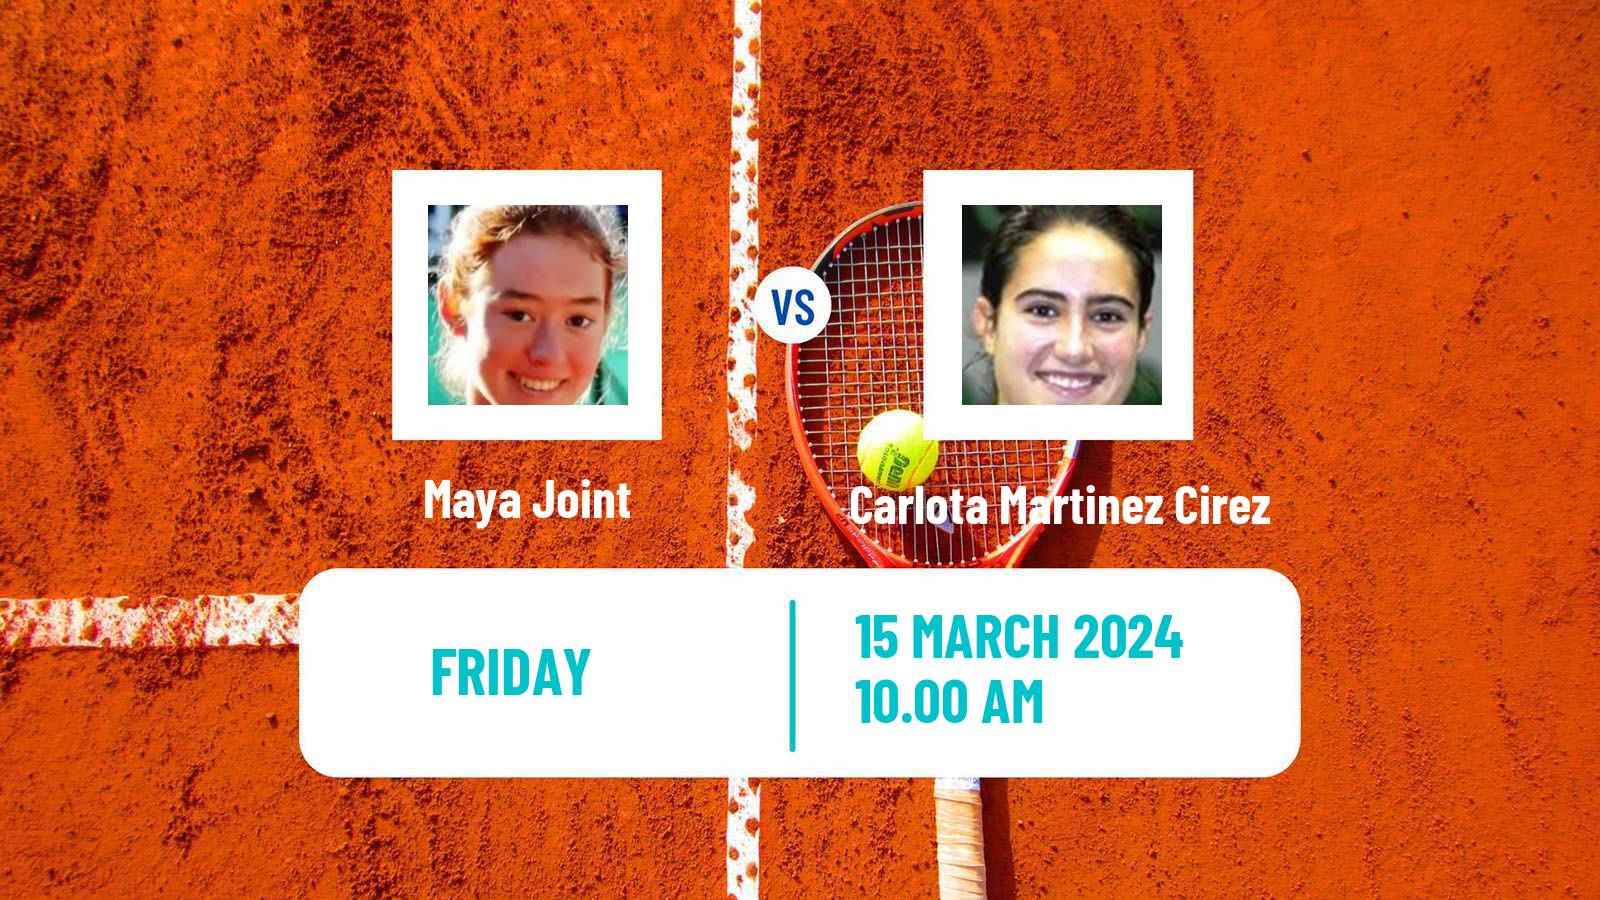 Tennis ITF W35 Santo Domingo 2 Women Maya Joint - Carlota Martinez Cirez